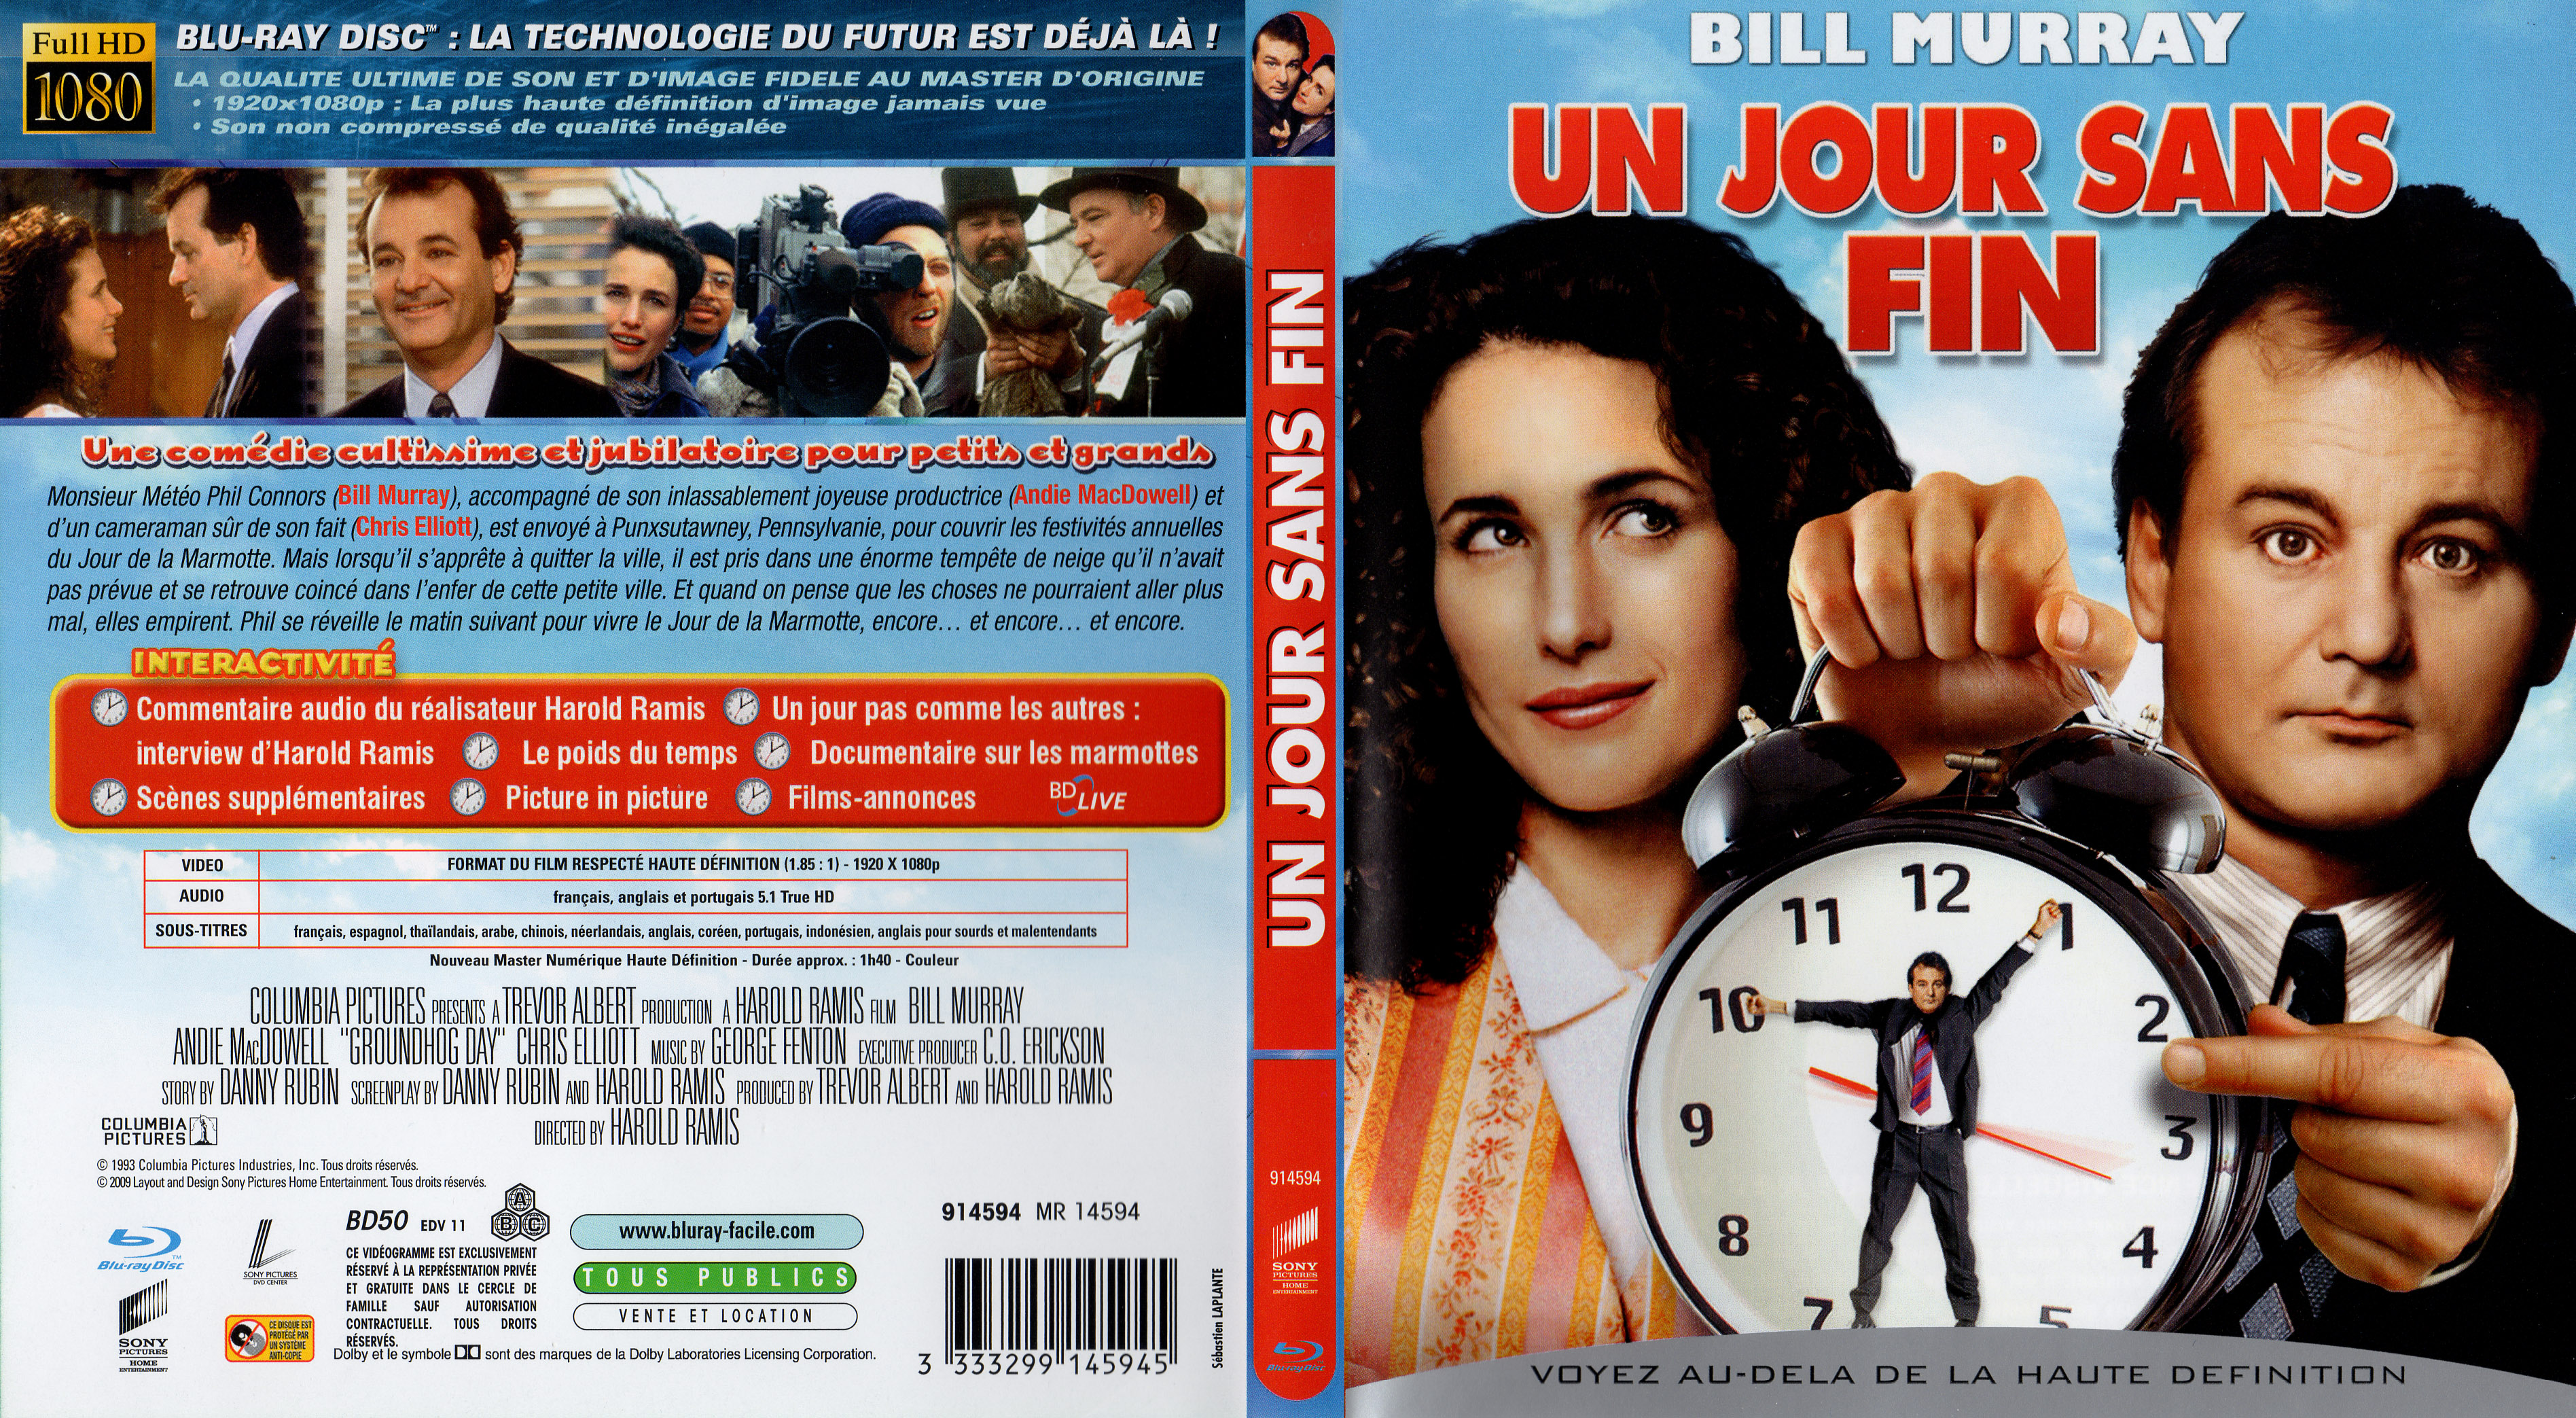 Jaquette Dvd De Un Jour Sans Fin Blu Ray Cinéma Passion